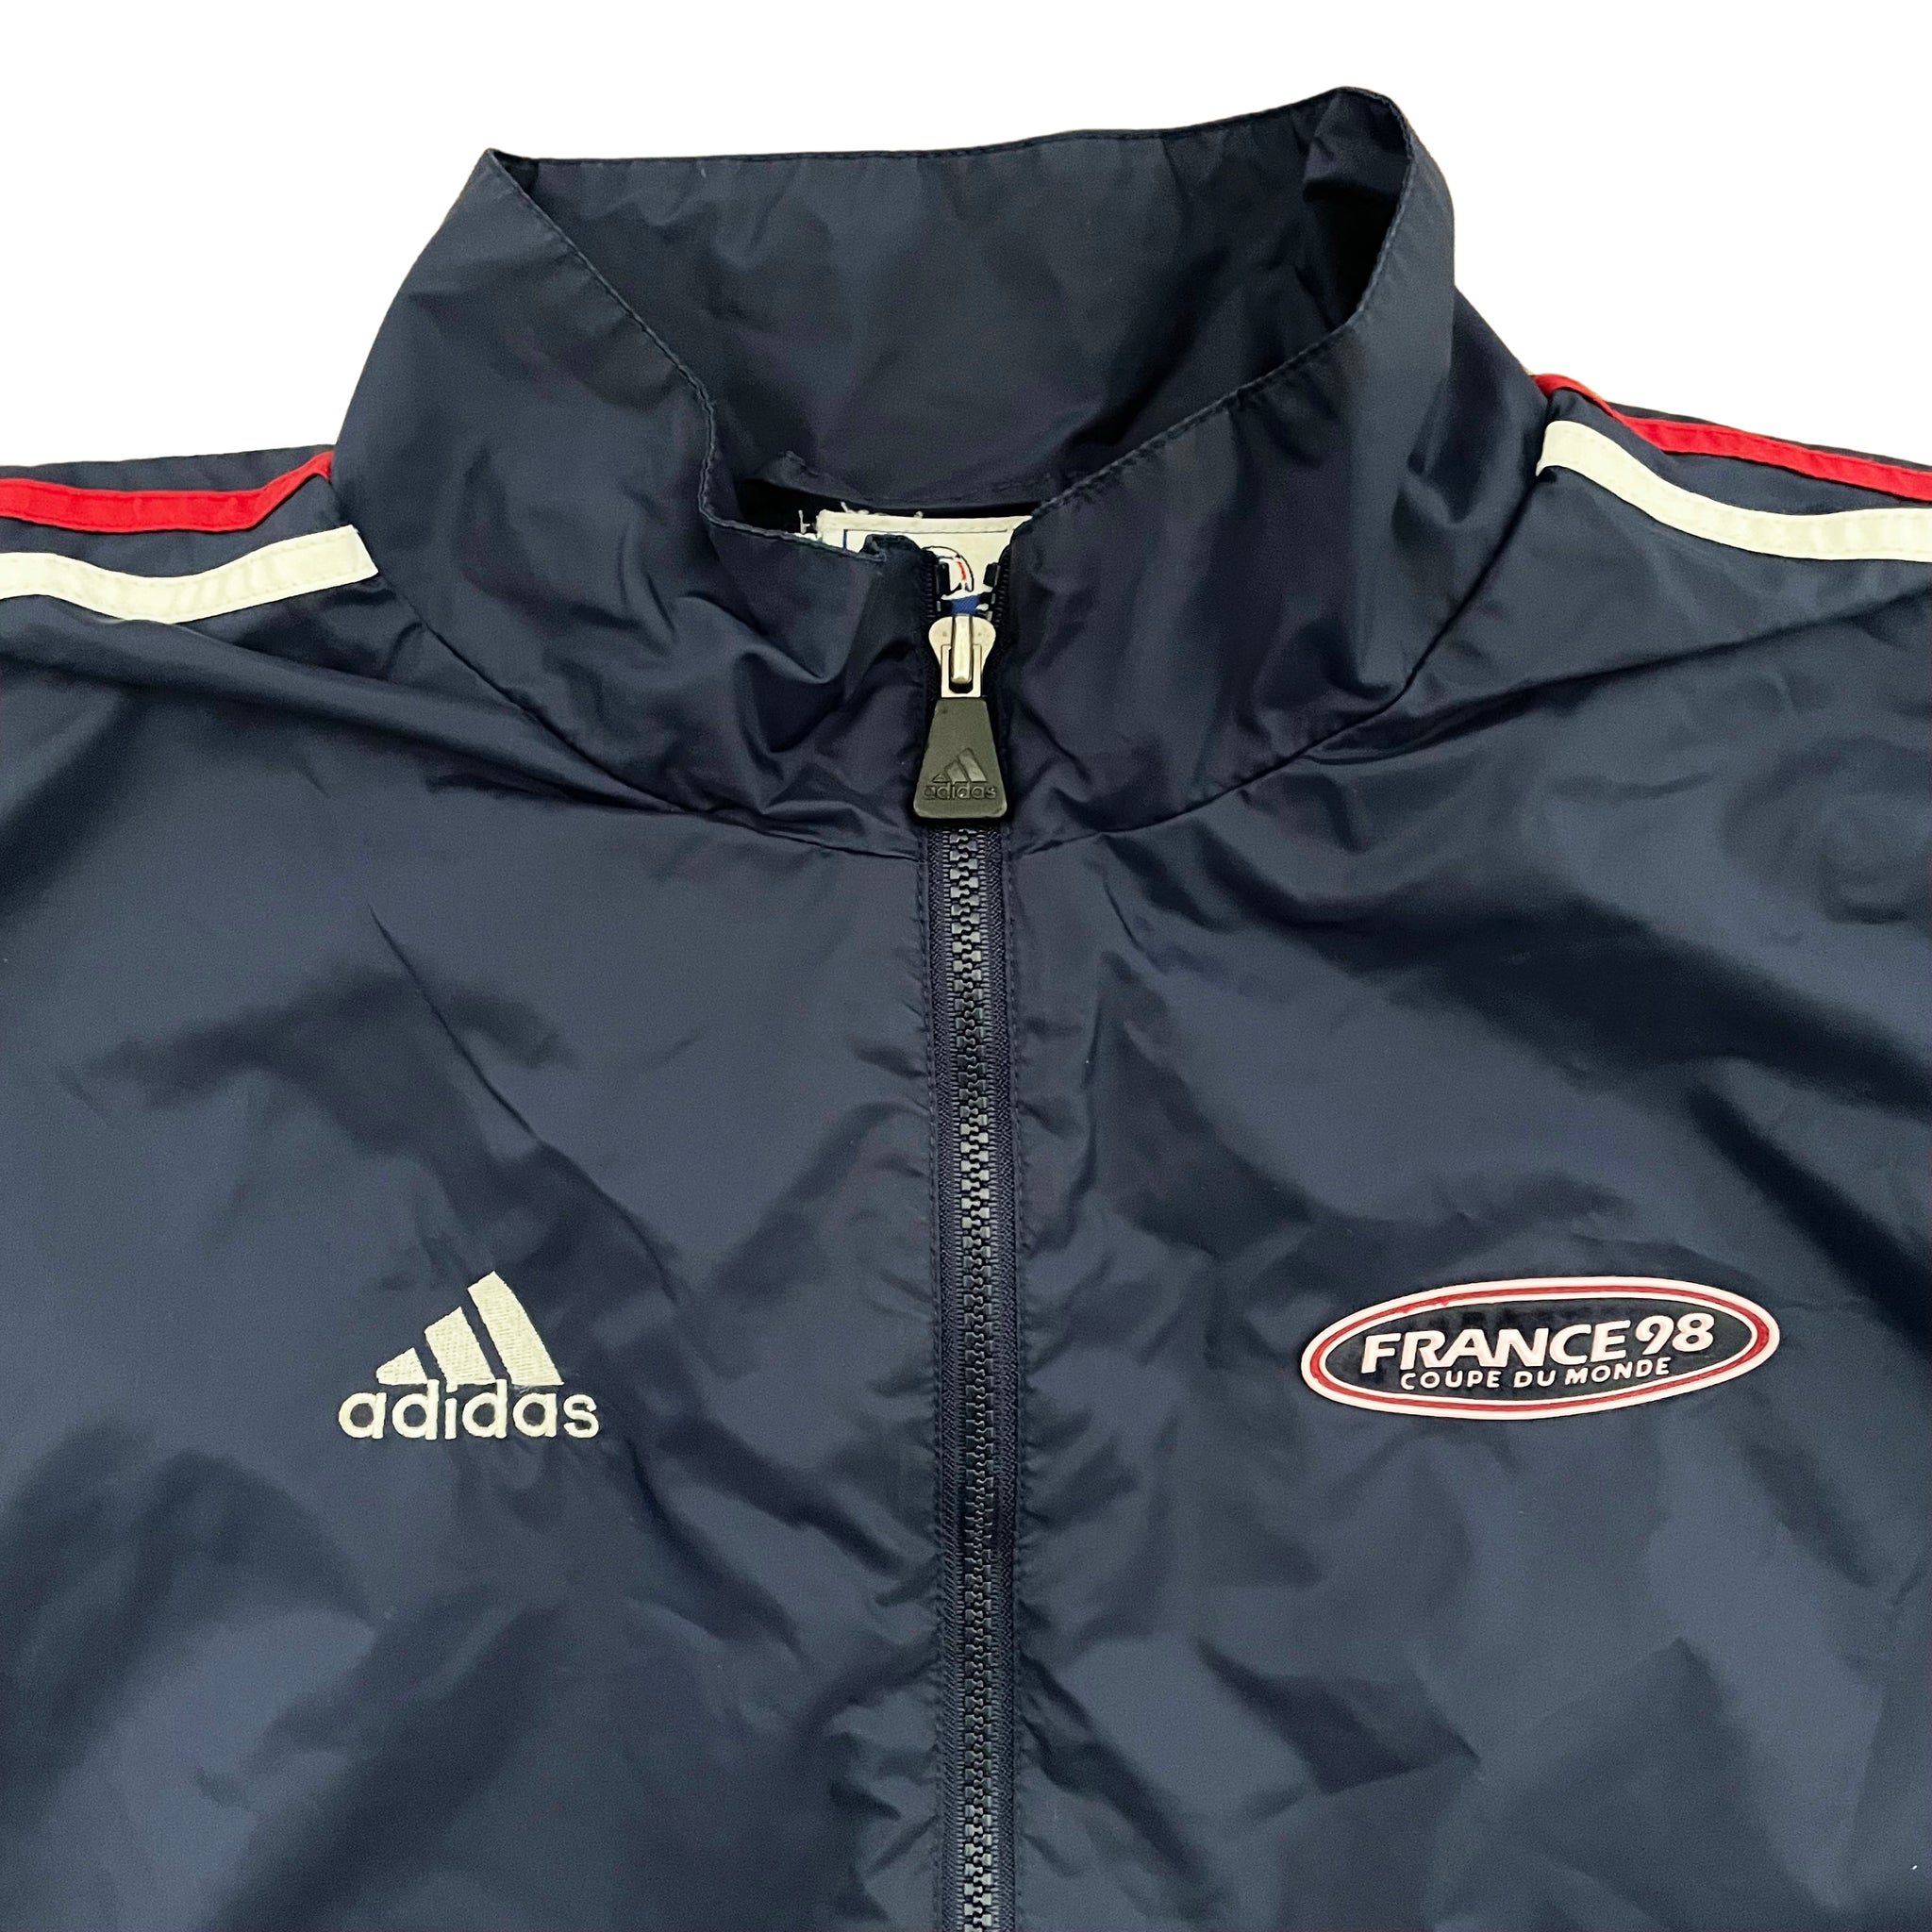 Adidas France 98 Jacket - XL